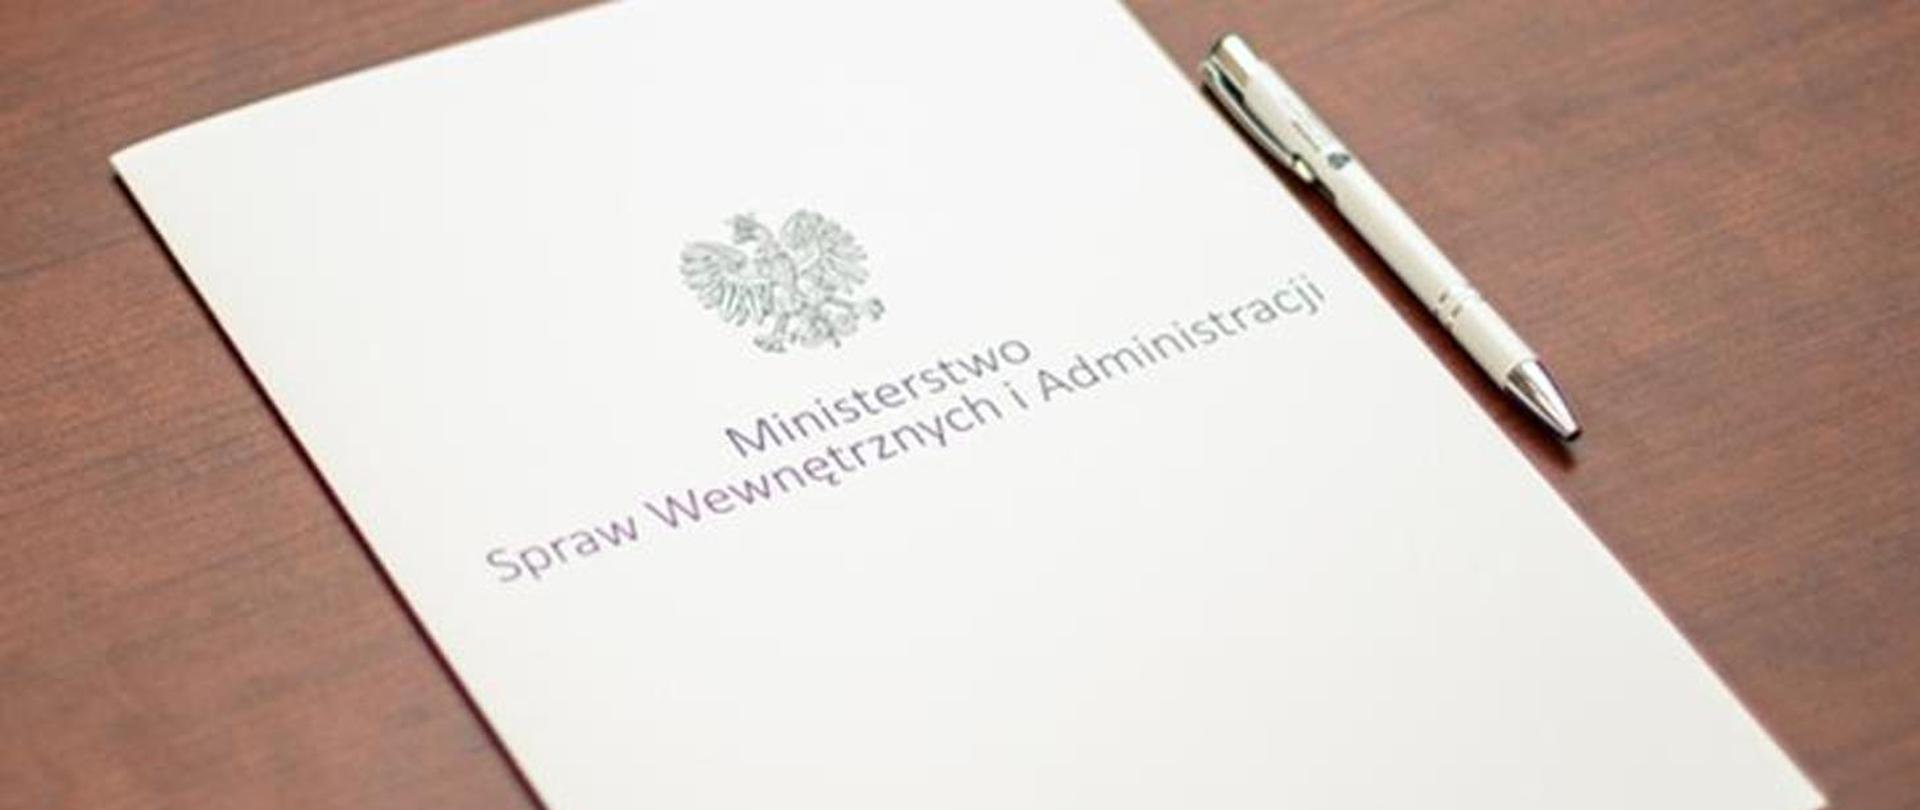 Na zdjęciu widzimy białą teczkę z napisem Ministerstwo Spraw Wewnętrznych i Administracji. Obok teczki leży długopis koloru białego. 